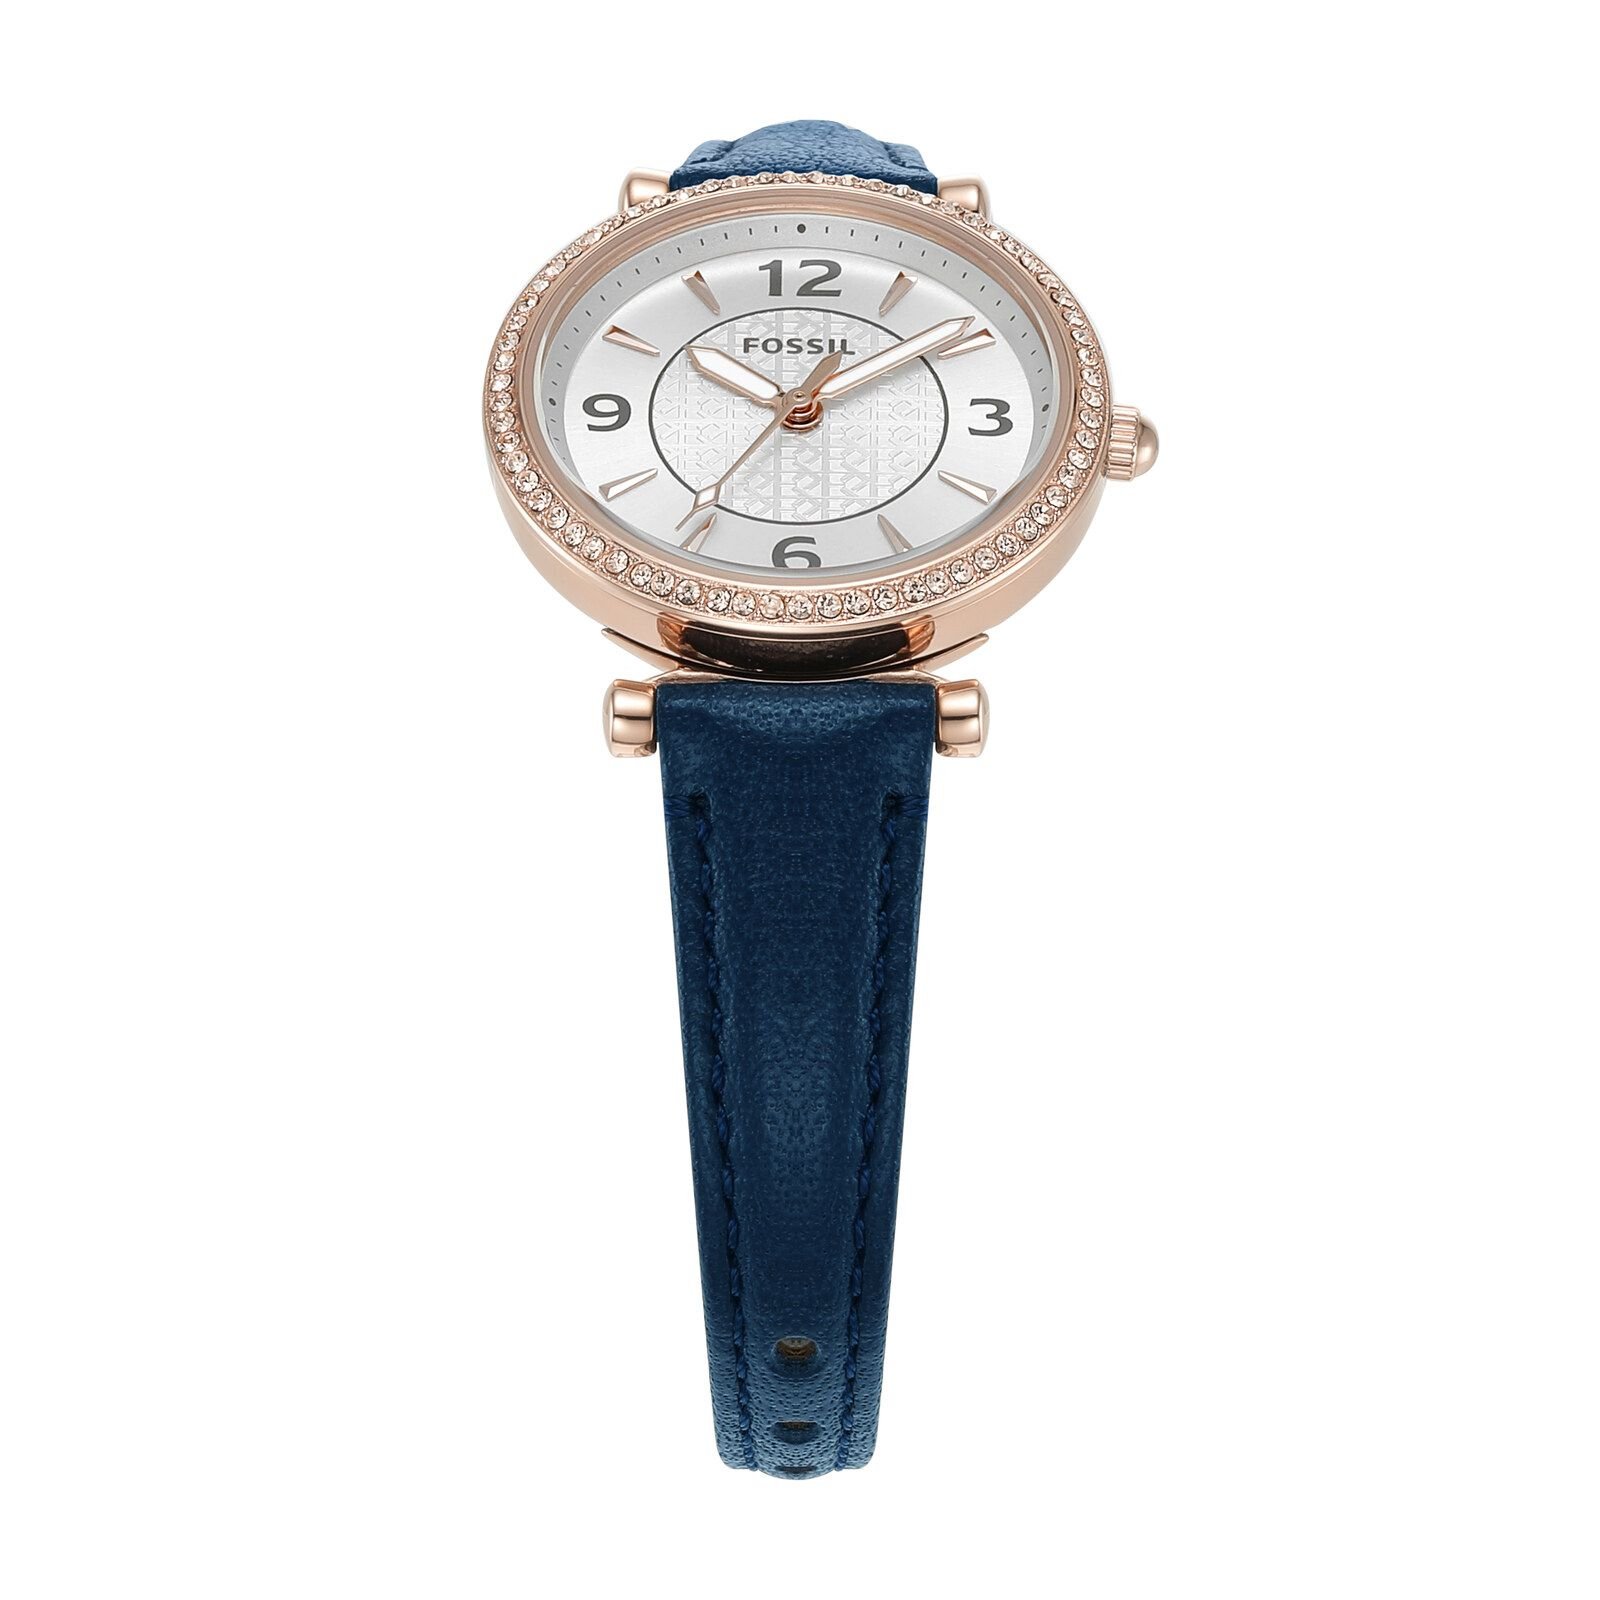  Đồng hồ nữ Fossil Carlie dây da ES5295 - màu xanh navy 